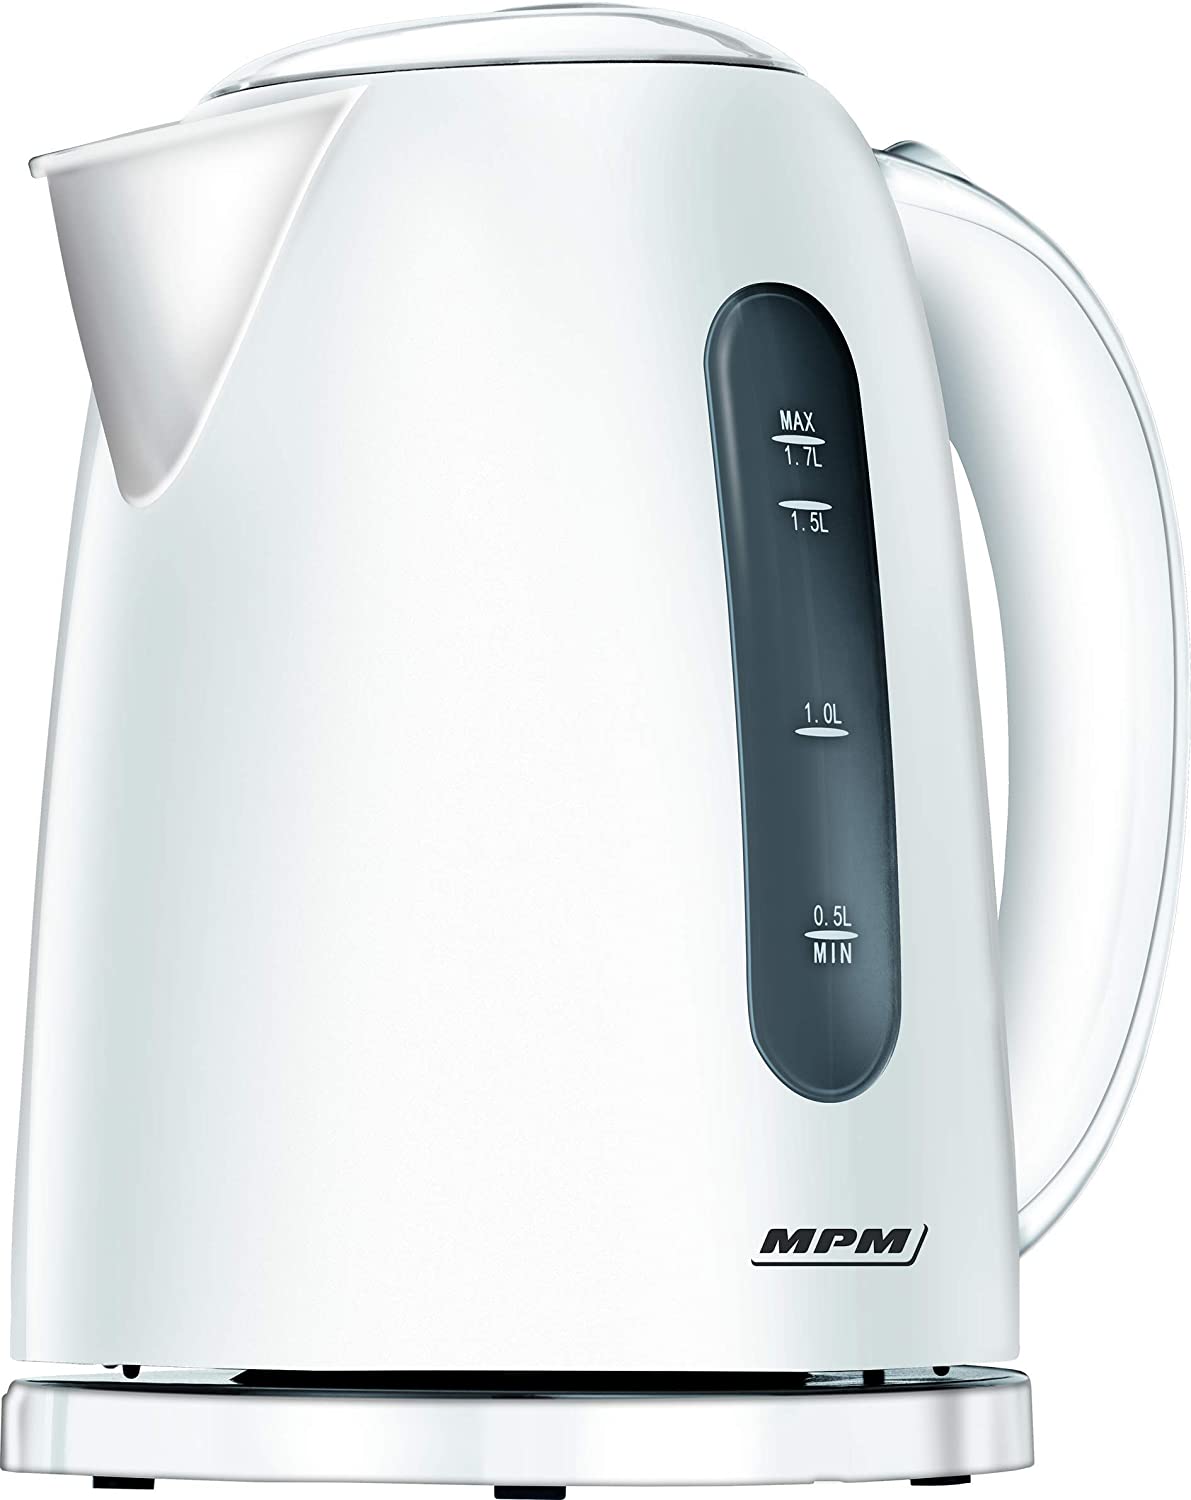 Fierbator MPM MCZ-85, 2200W, 1.7 litri, rotire 360 °, oprire automata, indicator nivel apa, alb